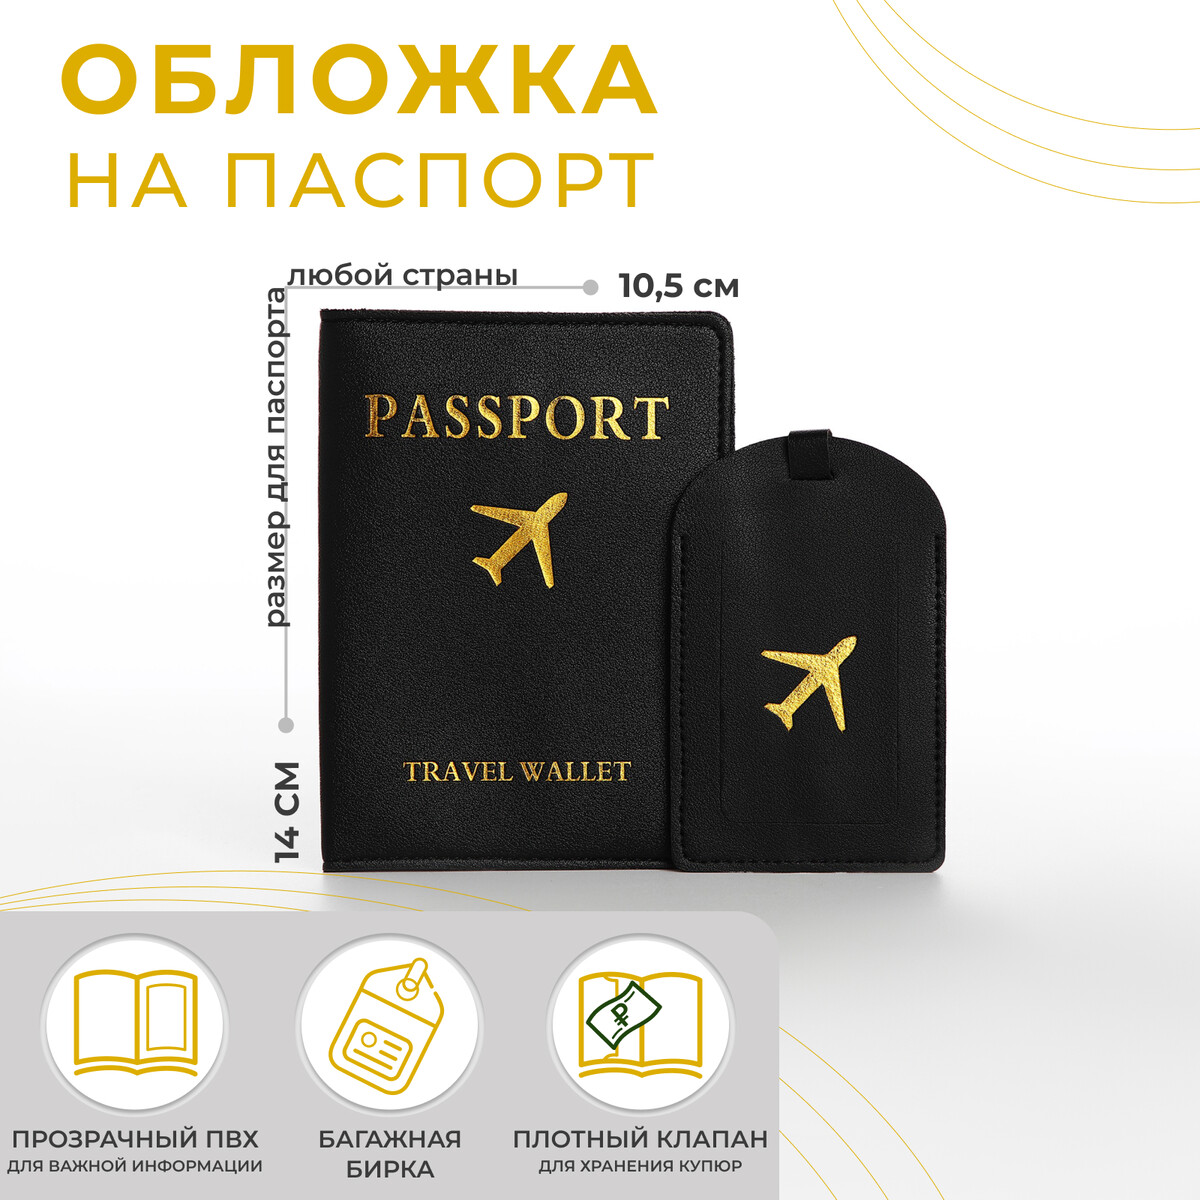 Обложка для паспорта, багажная бирка, цвет черный розовая багажная бирка button blue без размера